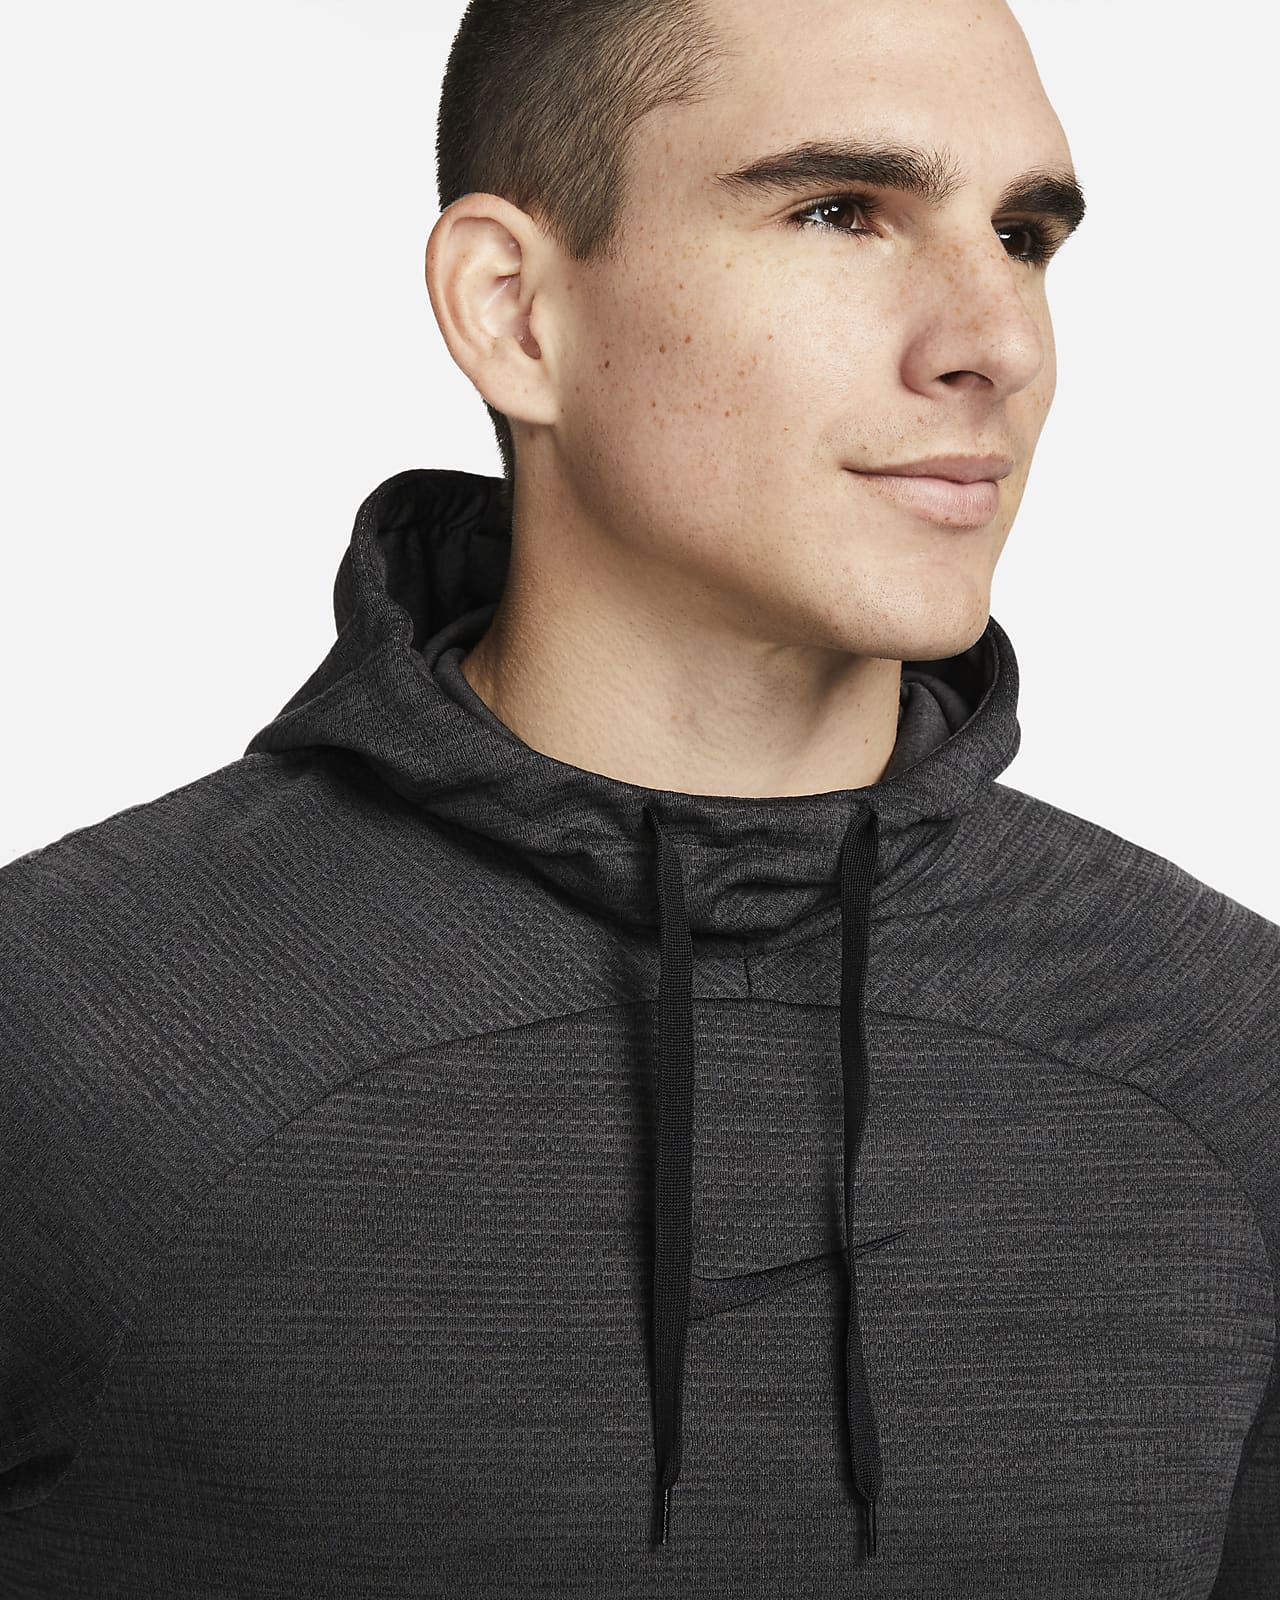 Nike Men's Dry Long Sleeve Hoodie Tee M / College Navy/White